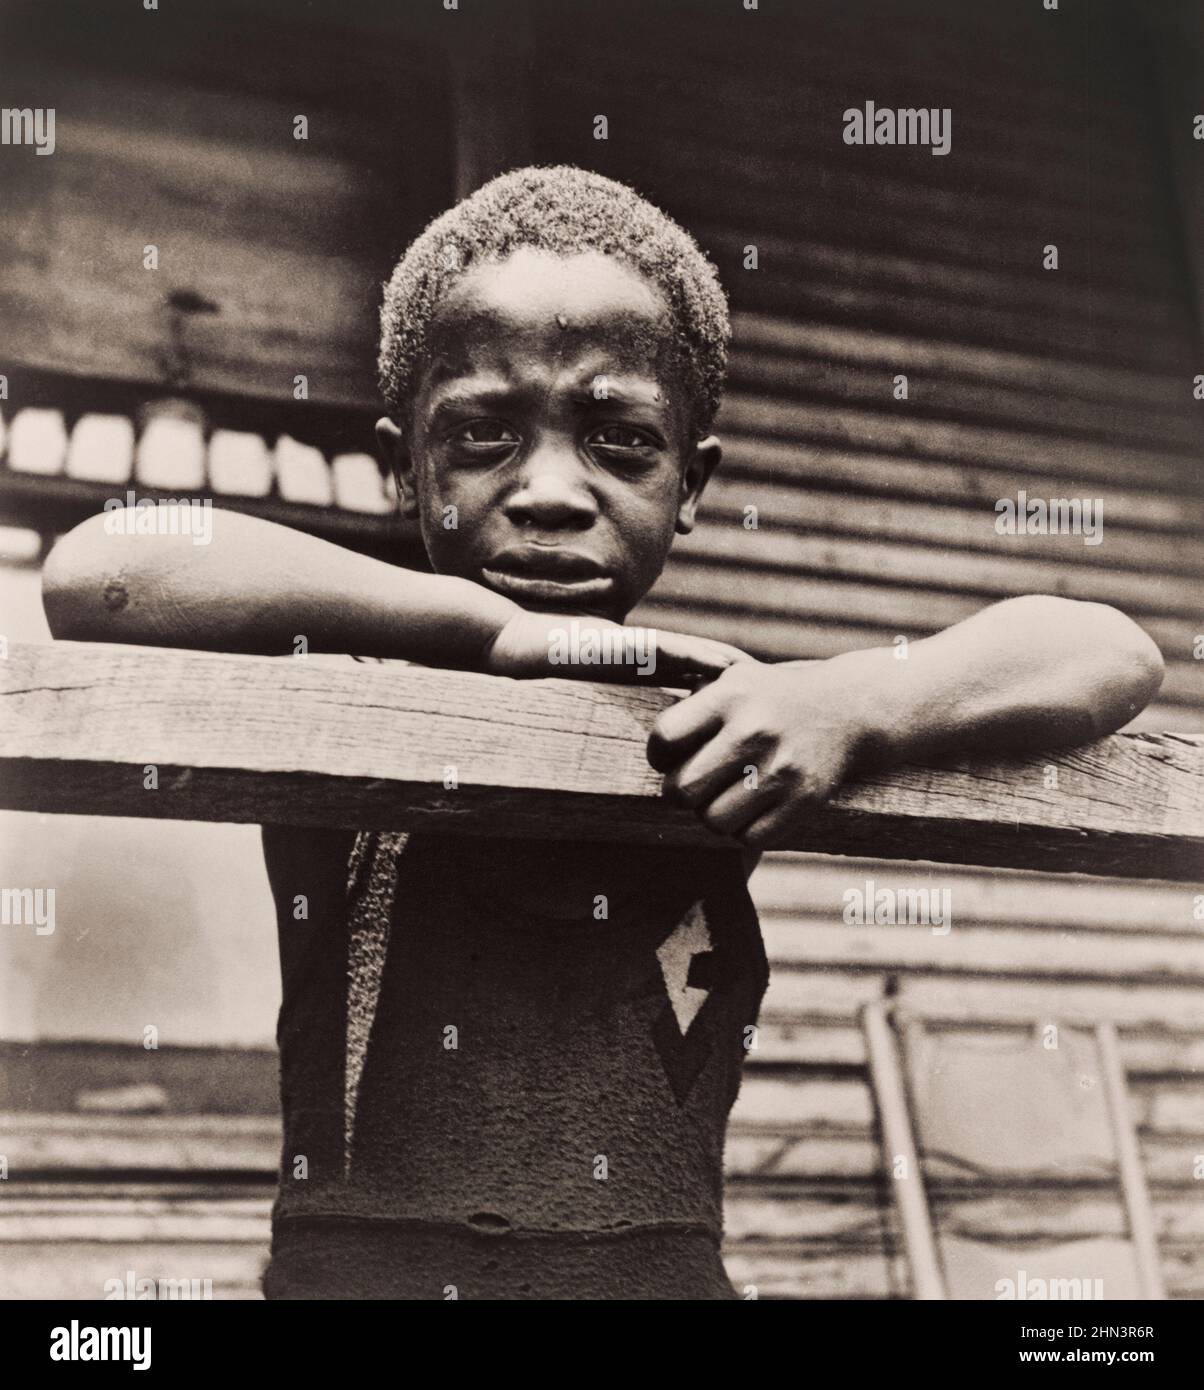 Foto vintage del hijo del trabajador siderúrgico afroamericano, Pittsburgh, 1935 por Marion Wolcott, 1910-1990, fotógrafo Foto de stock